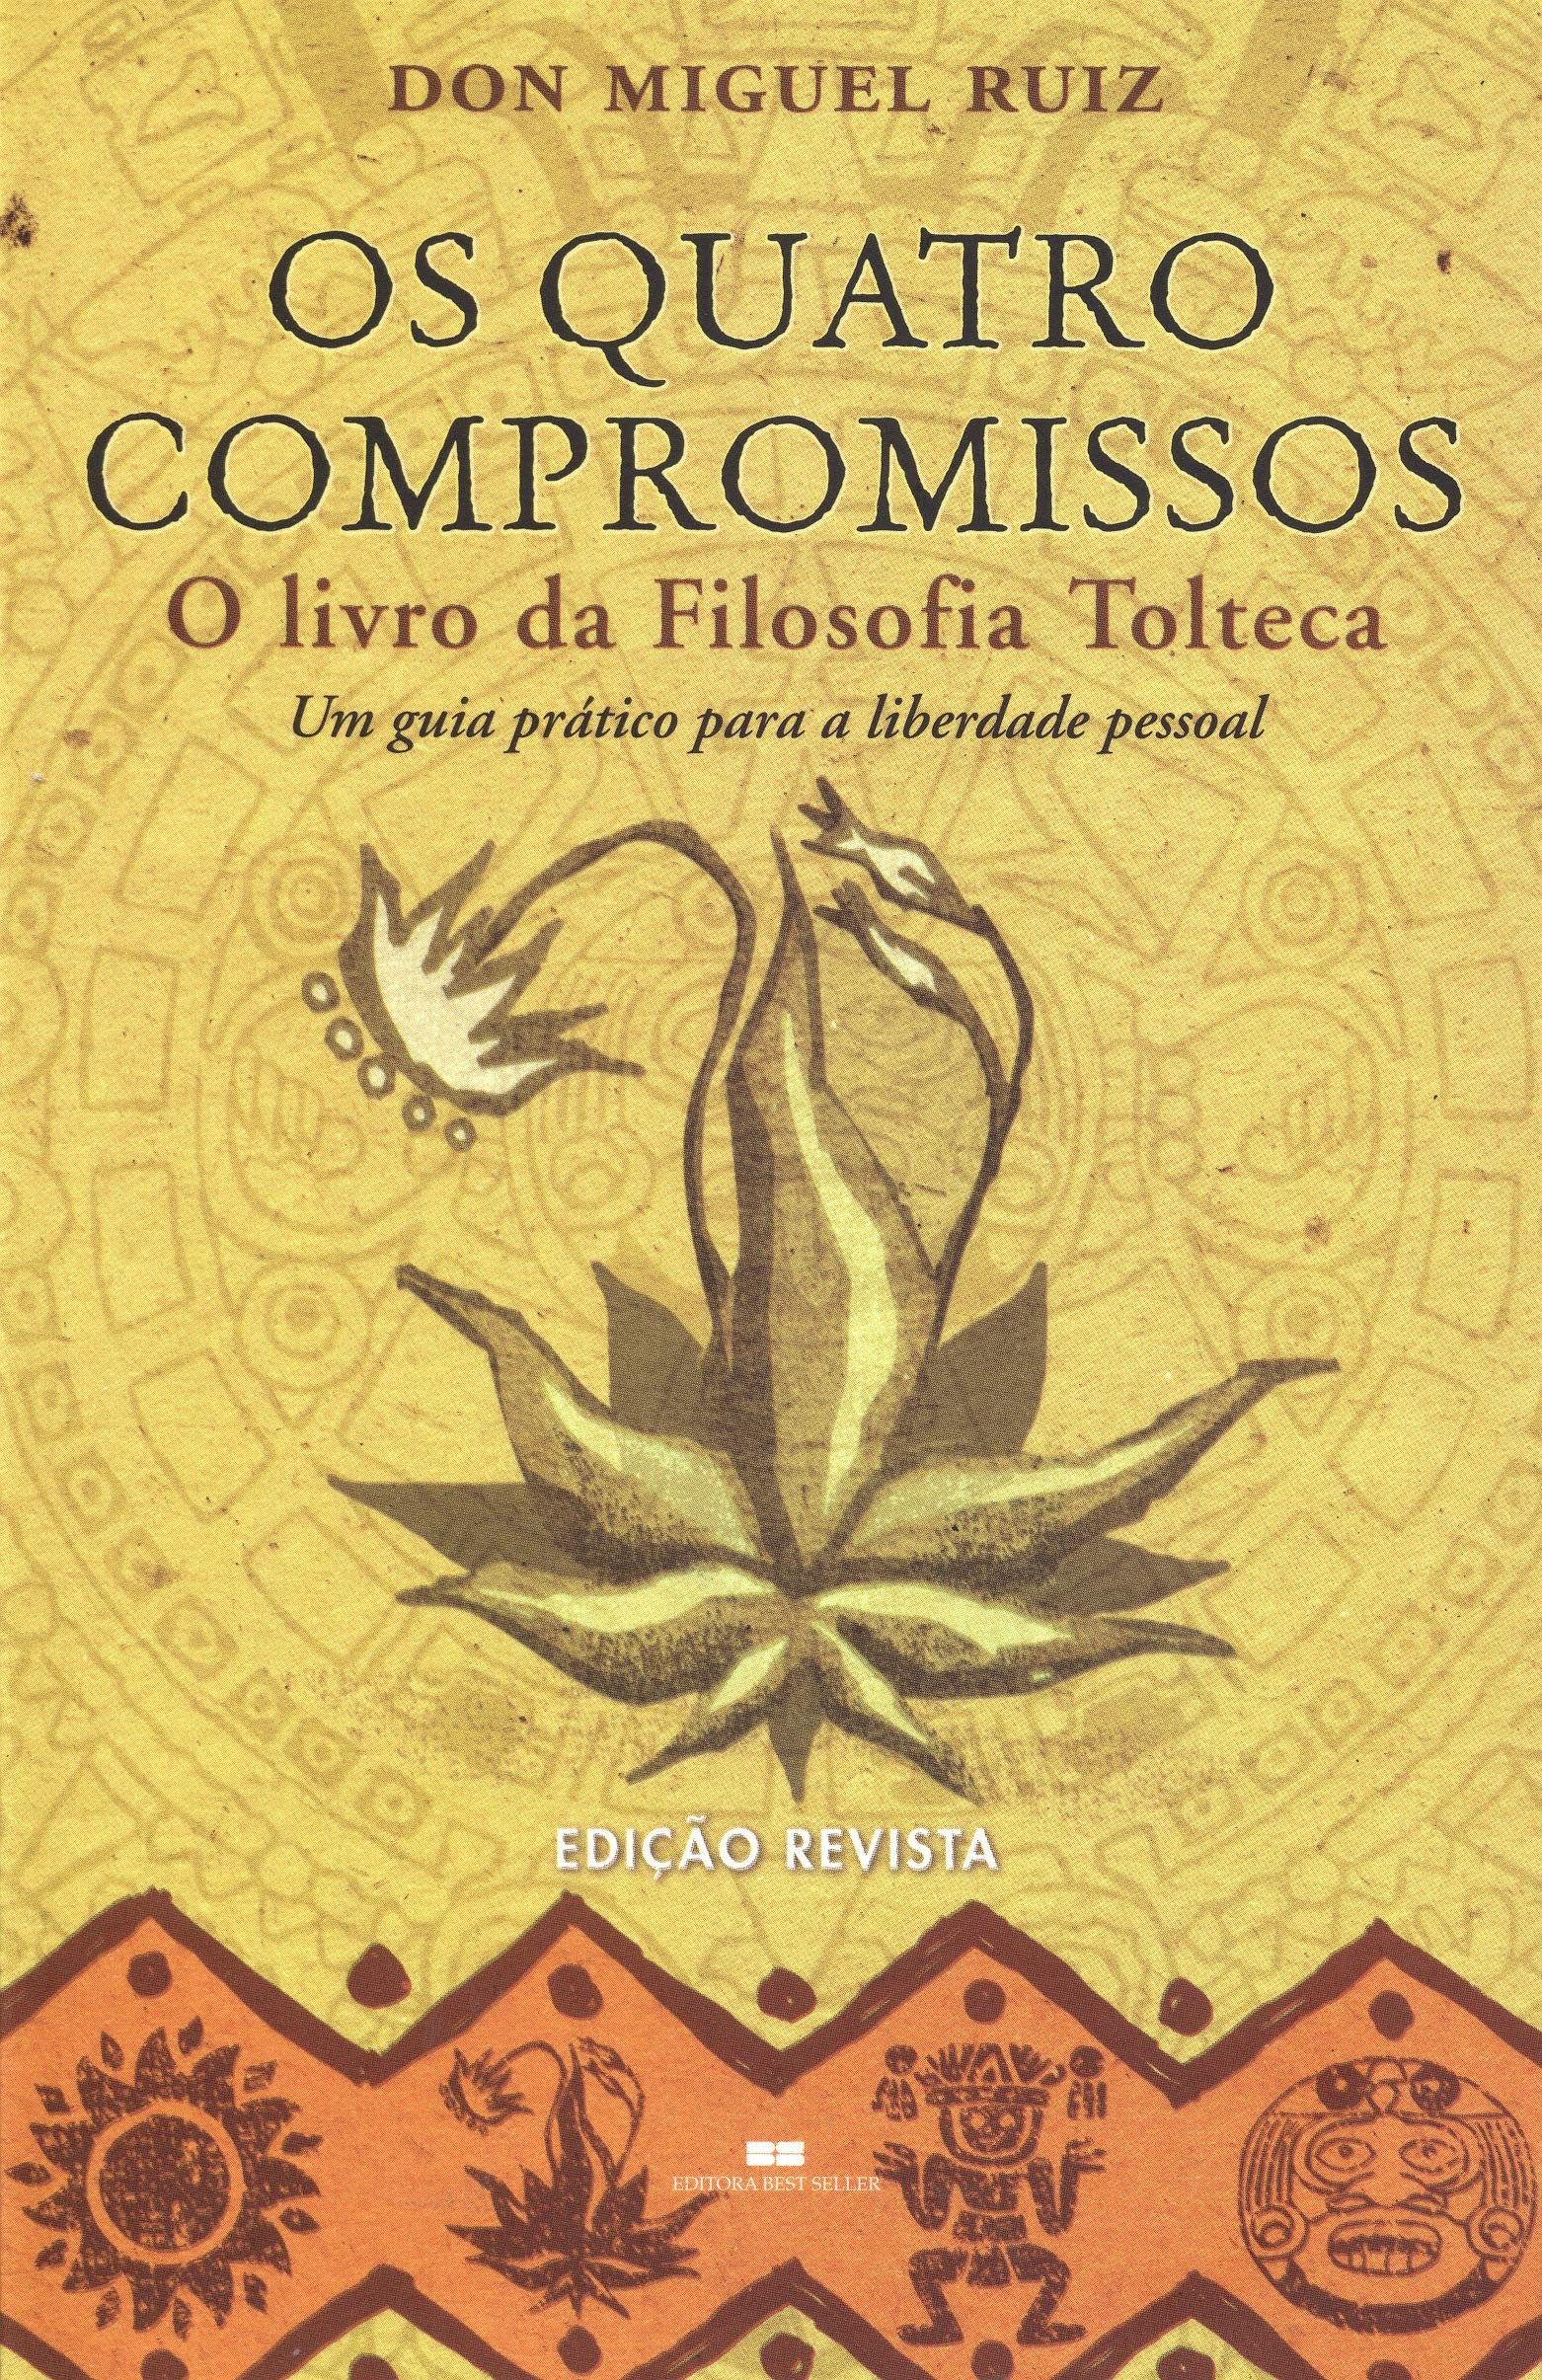 Os quatro compromissos: Um guia prático para a liberdade pessoal, por Don Miguel Ruiz (Foto: Reprodução/ Amazon)